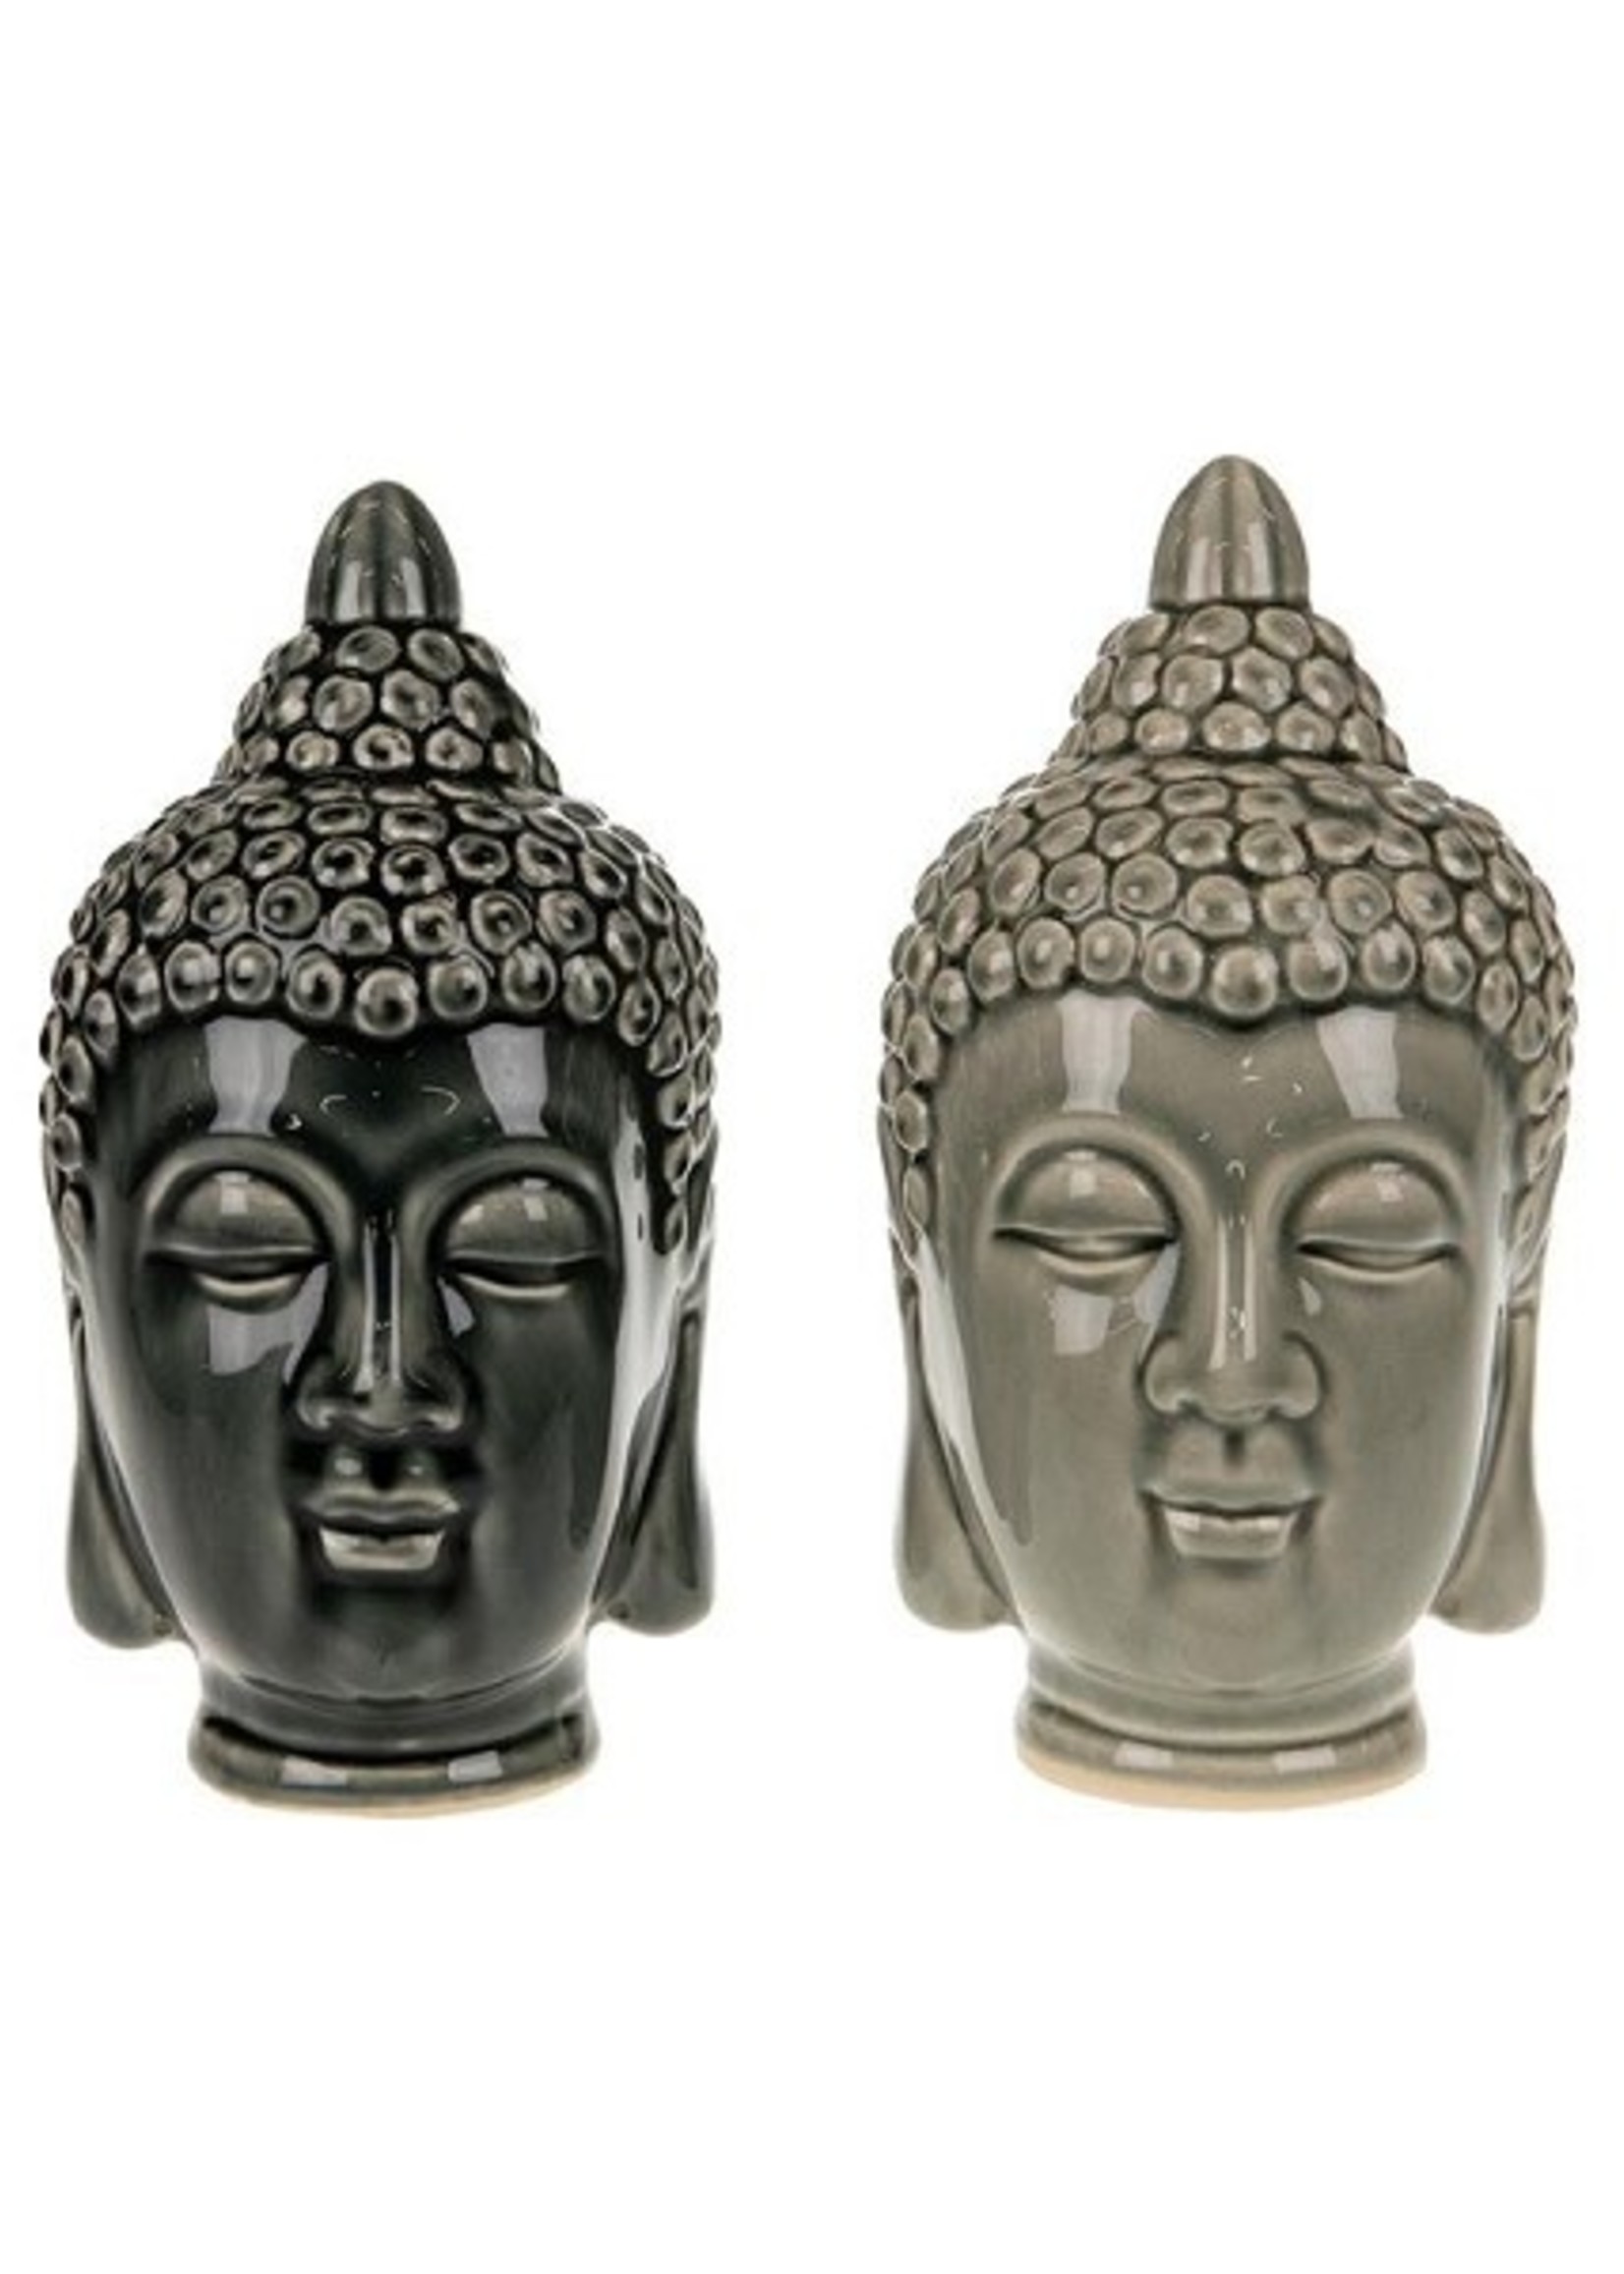 Dijk Natural Collections Boeddha hoofd keramiek 10x10x20cm verkrijgbaar in grijs of antraciet